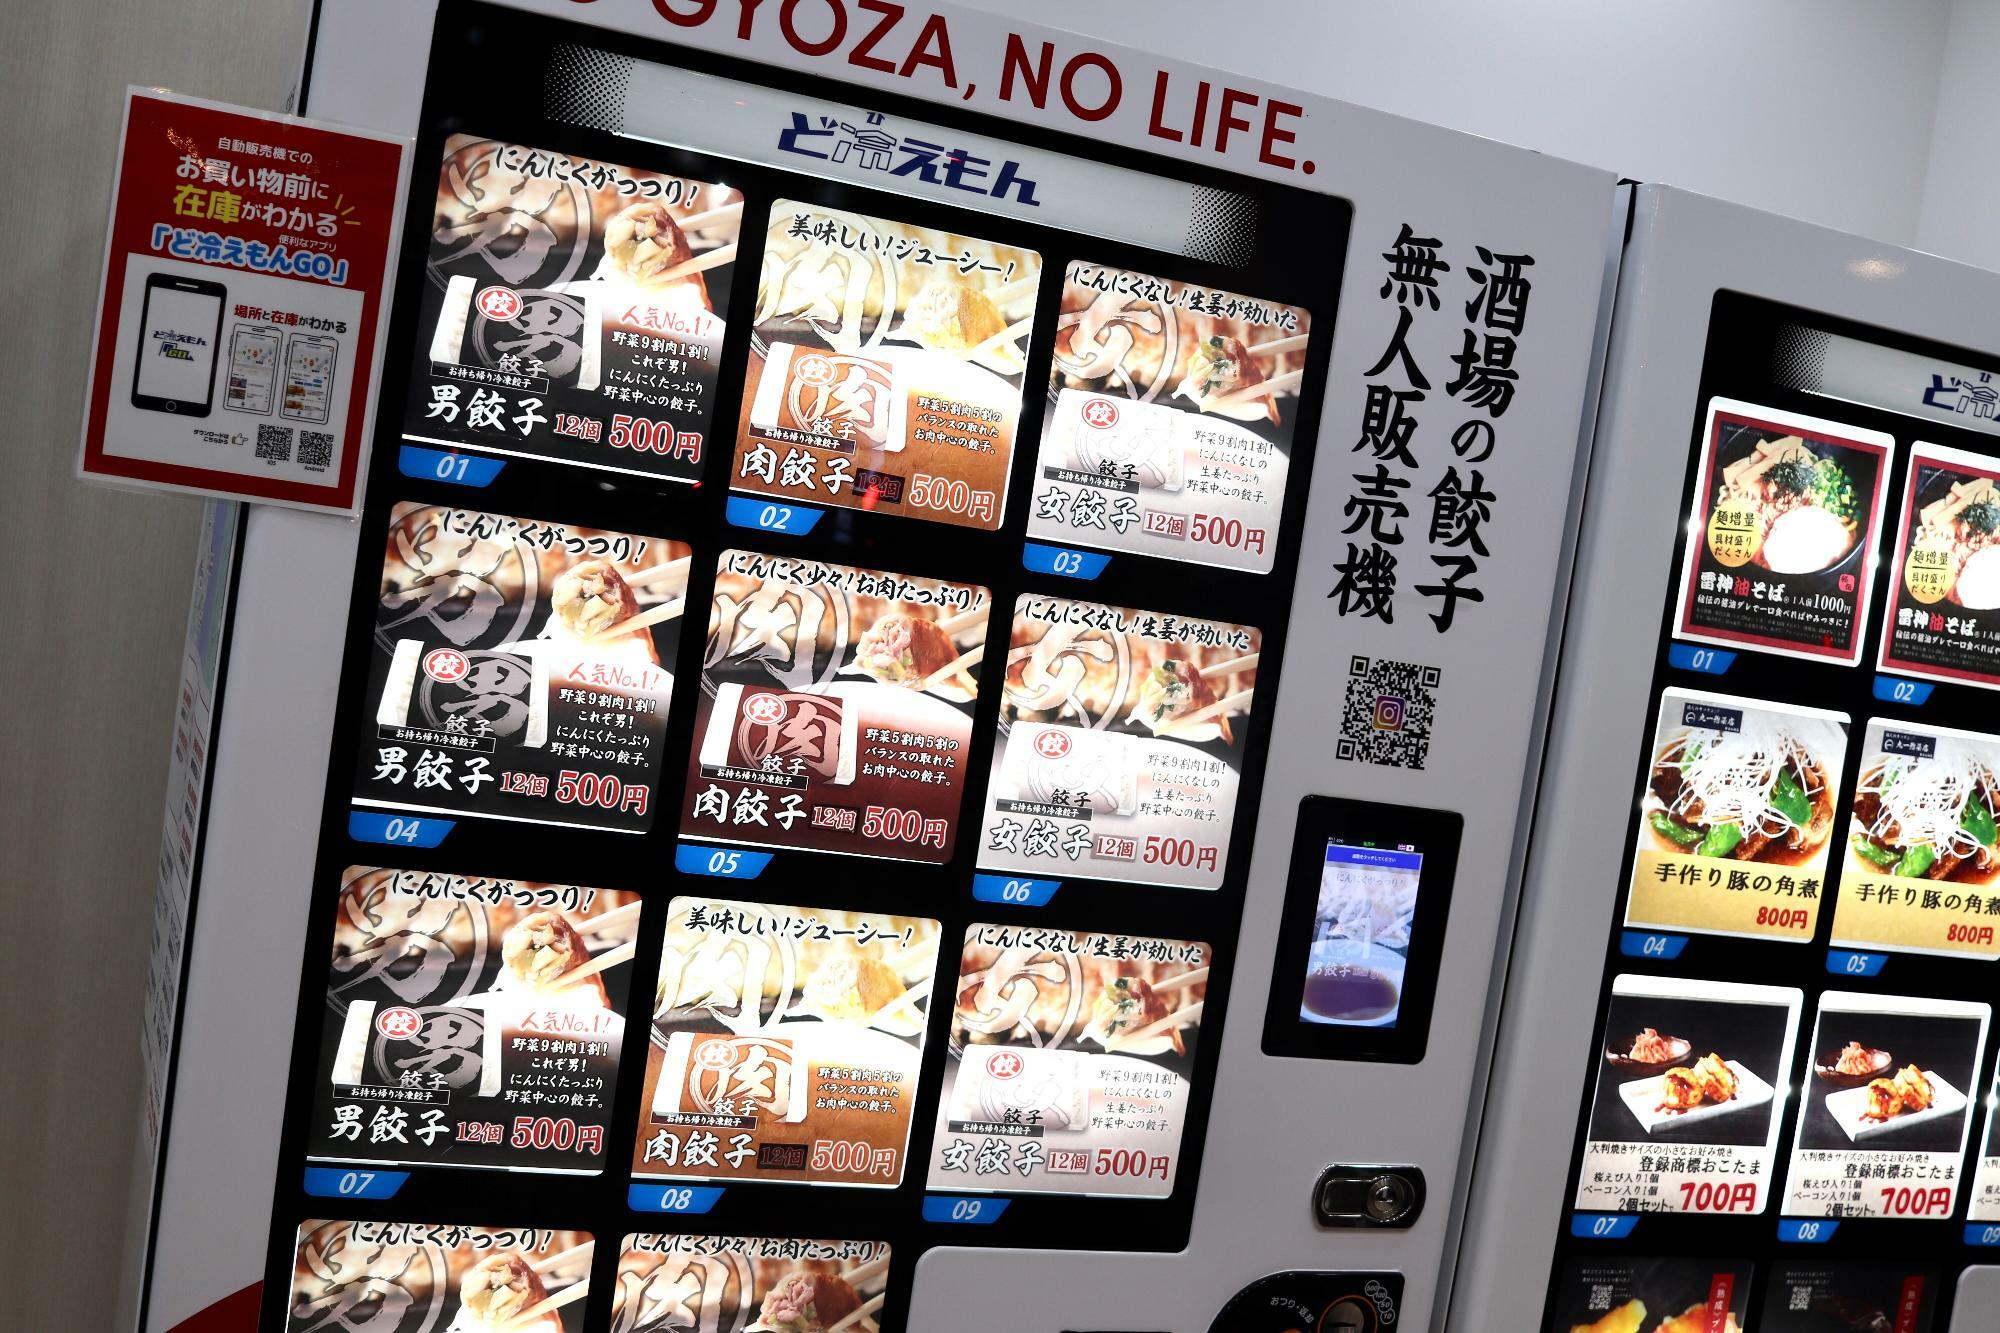 コインランドリーに設置された冷凍食品の自動販売機